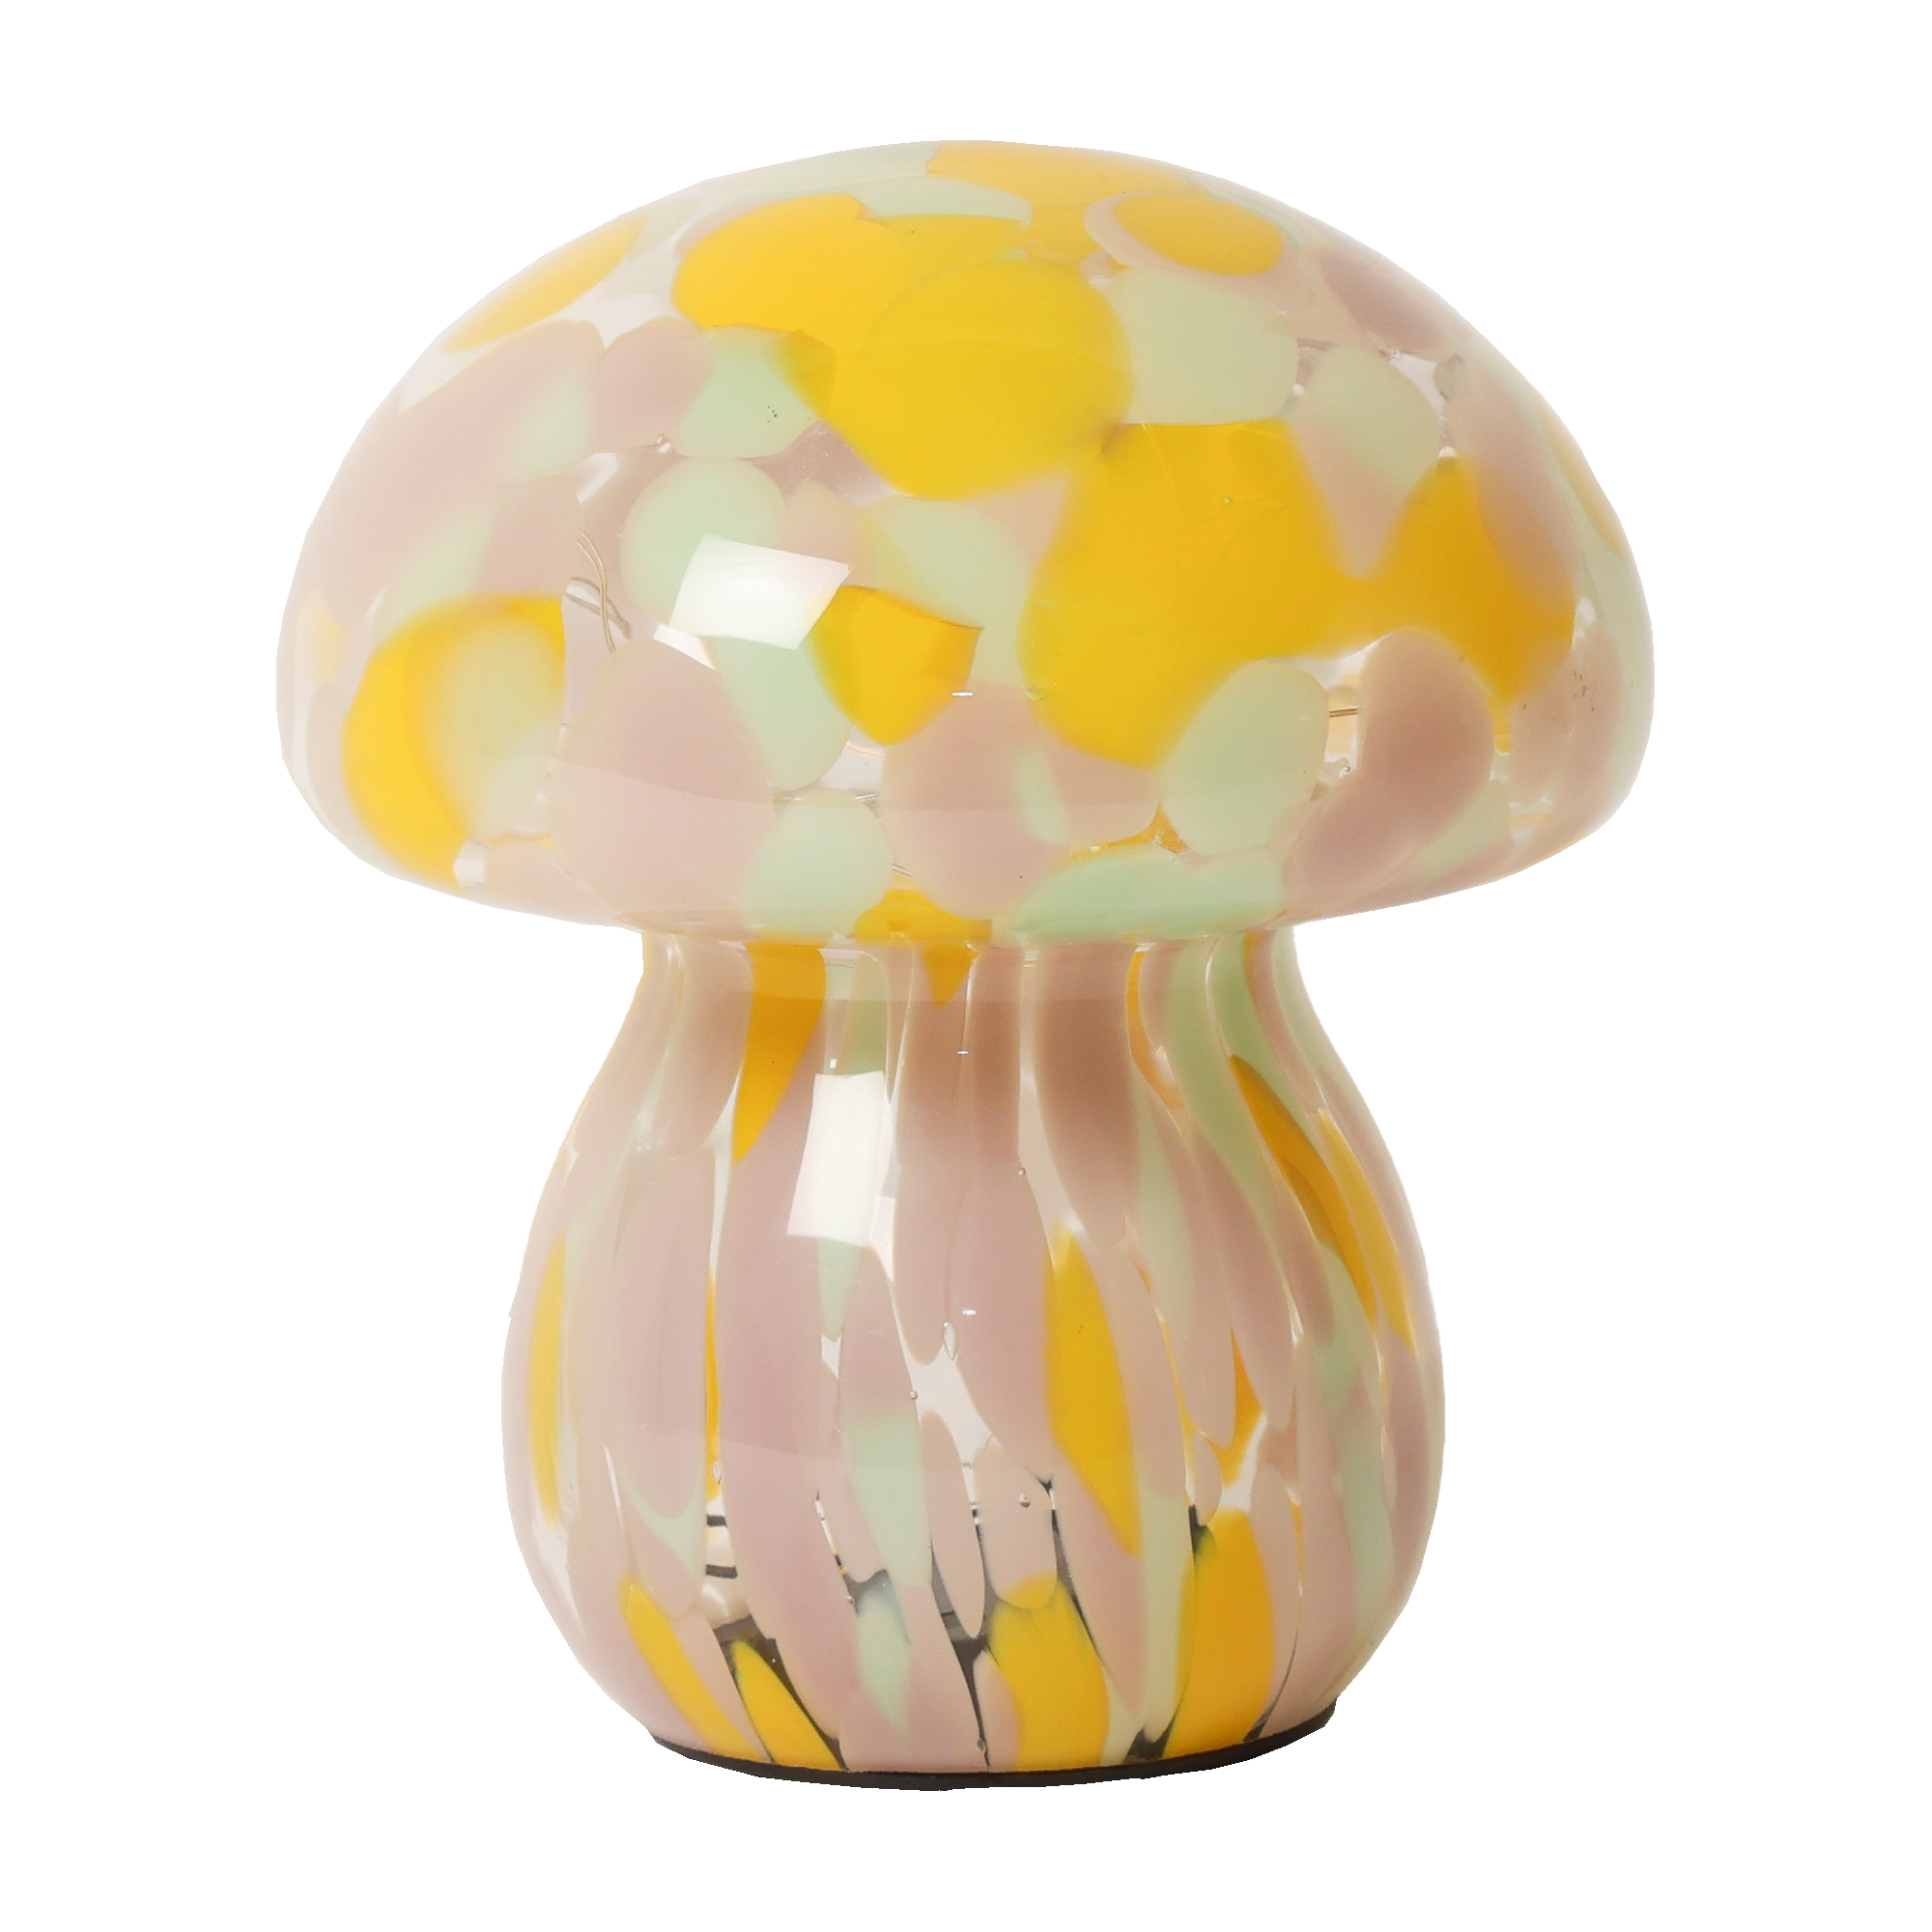 Billede af Mushroom lampe i glas, gul/rosa/mint